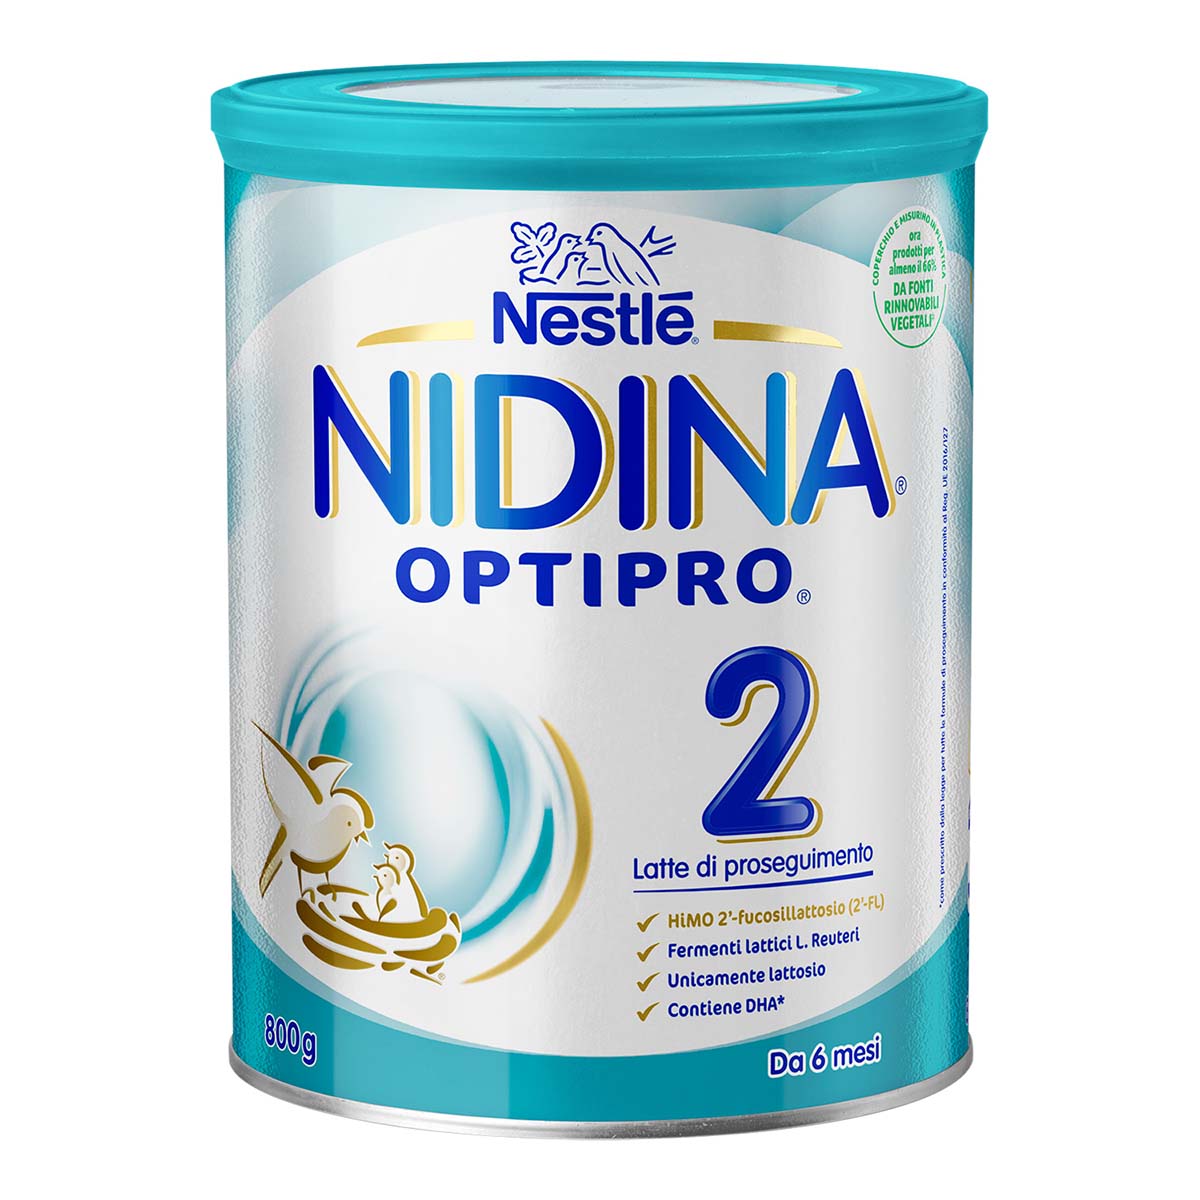 Nestlé NIDINA OPTIPRO 2 1kg (2x500g), Latte di proseguimento in polvere, dal 6° mese compiuto al 12°